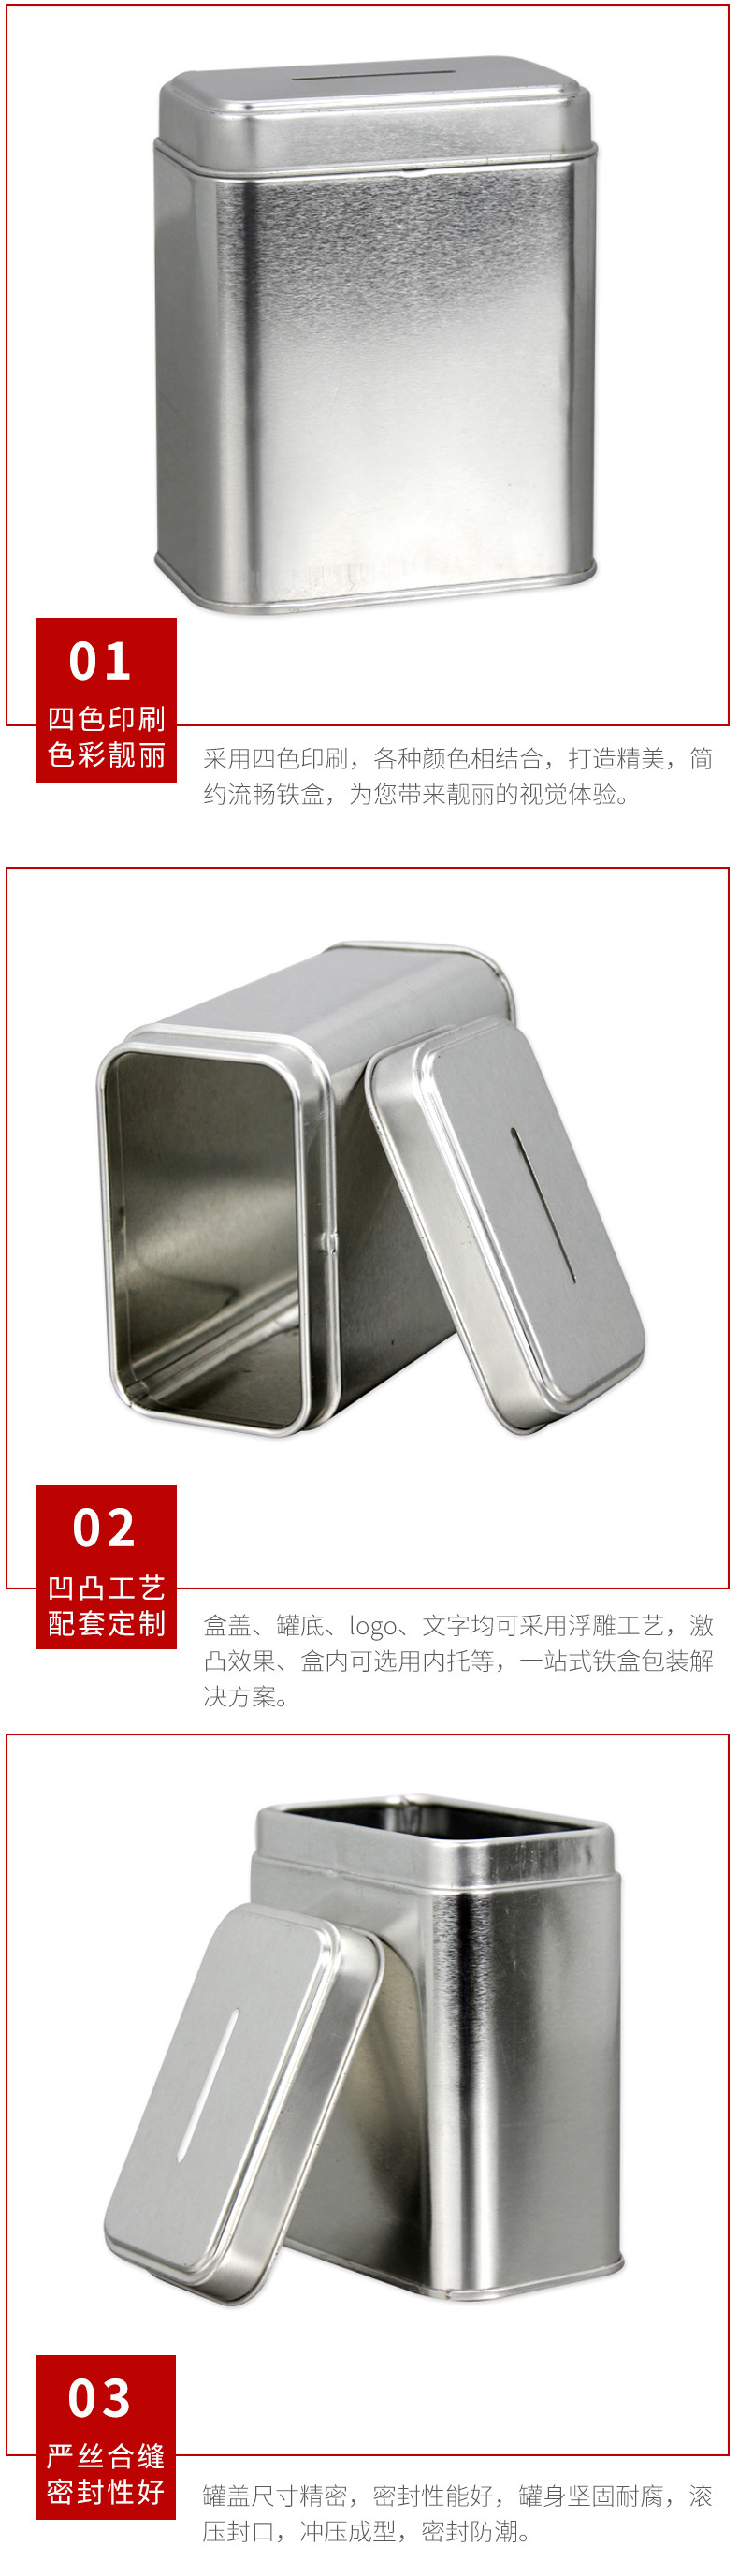 厂家直销马口铁存钱罐 银色铁盒免费拿样 马口铁方形存钱罐 定制示例图12